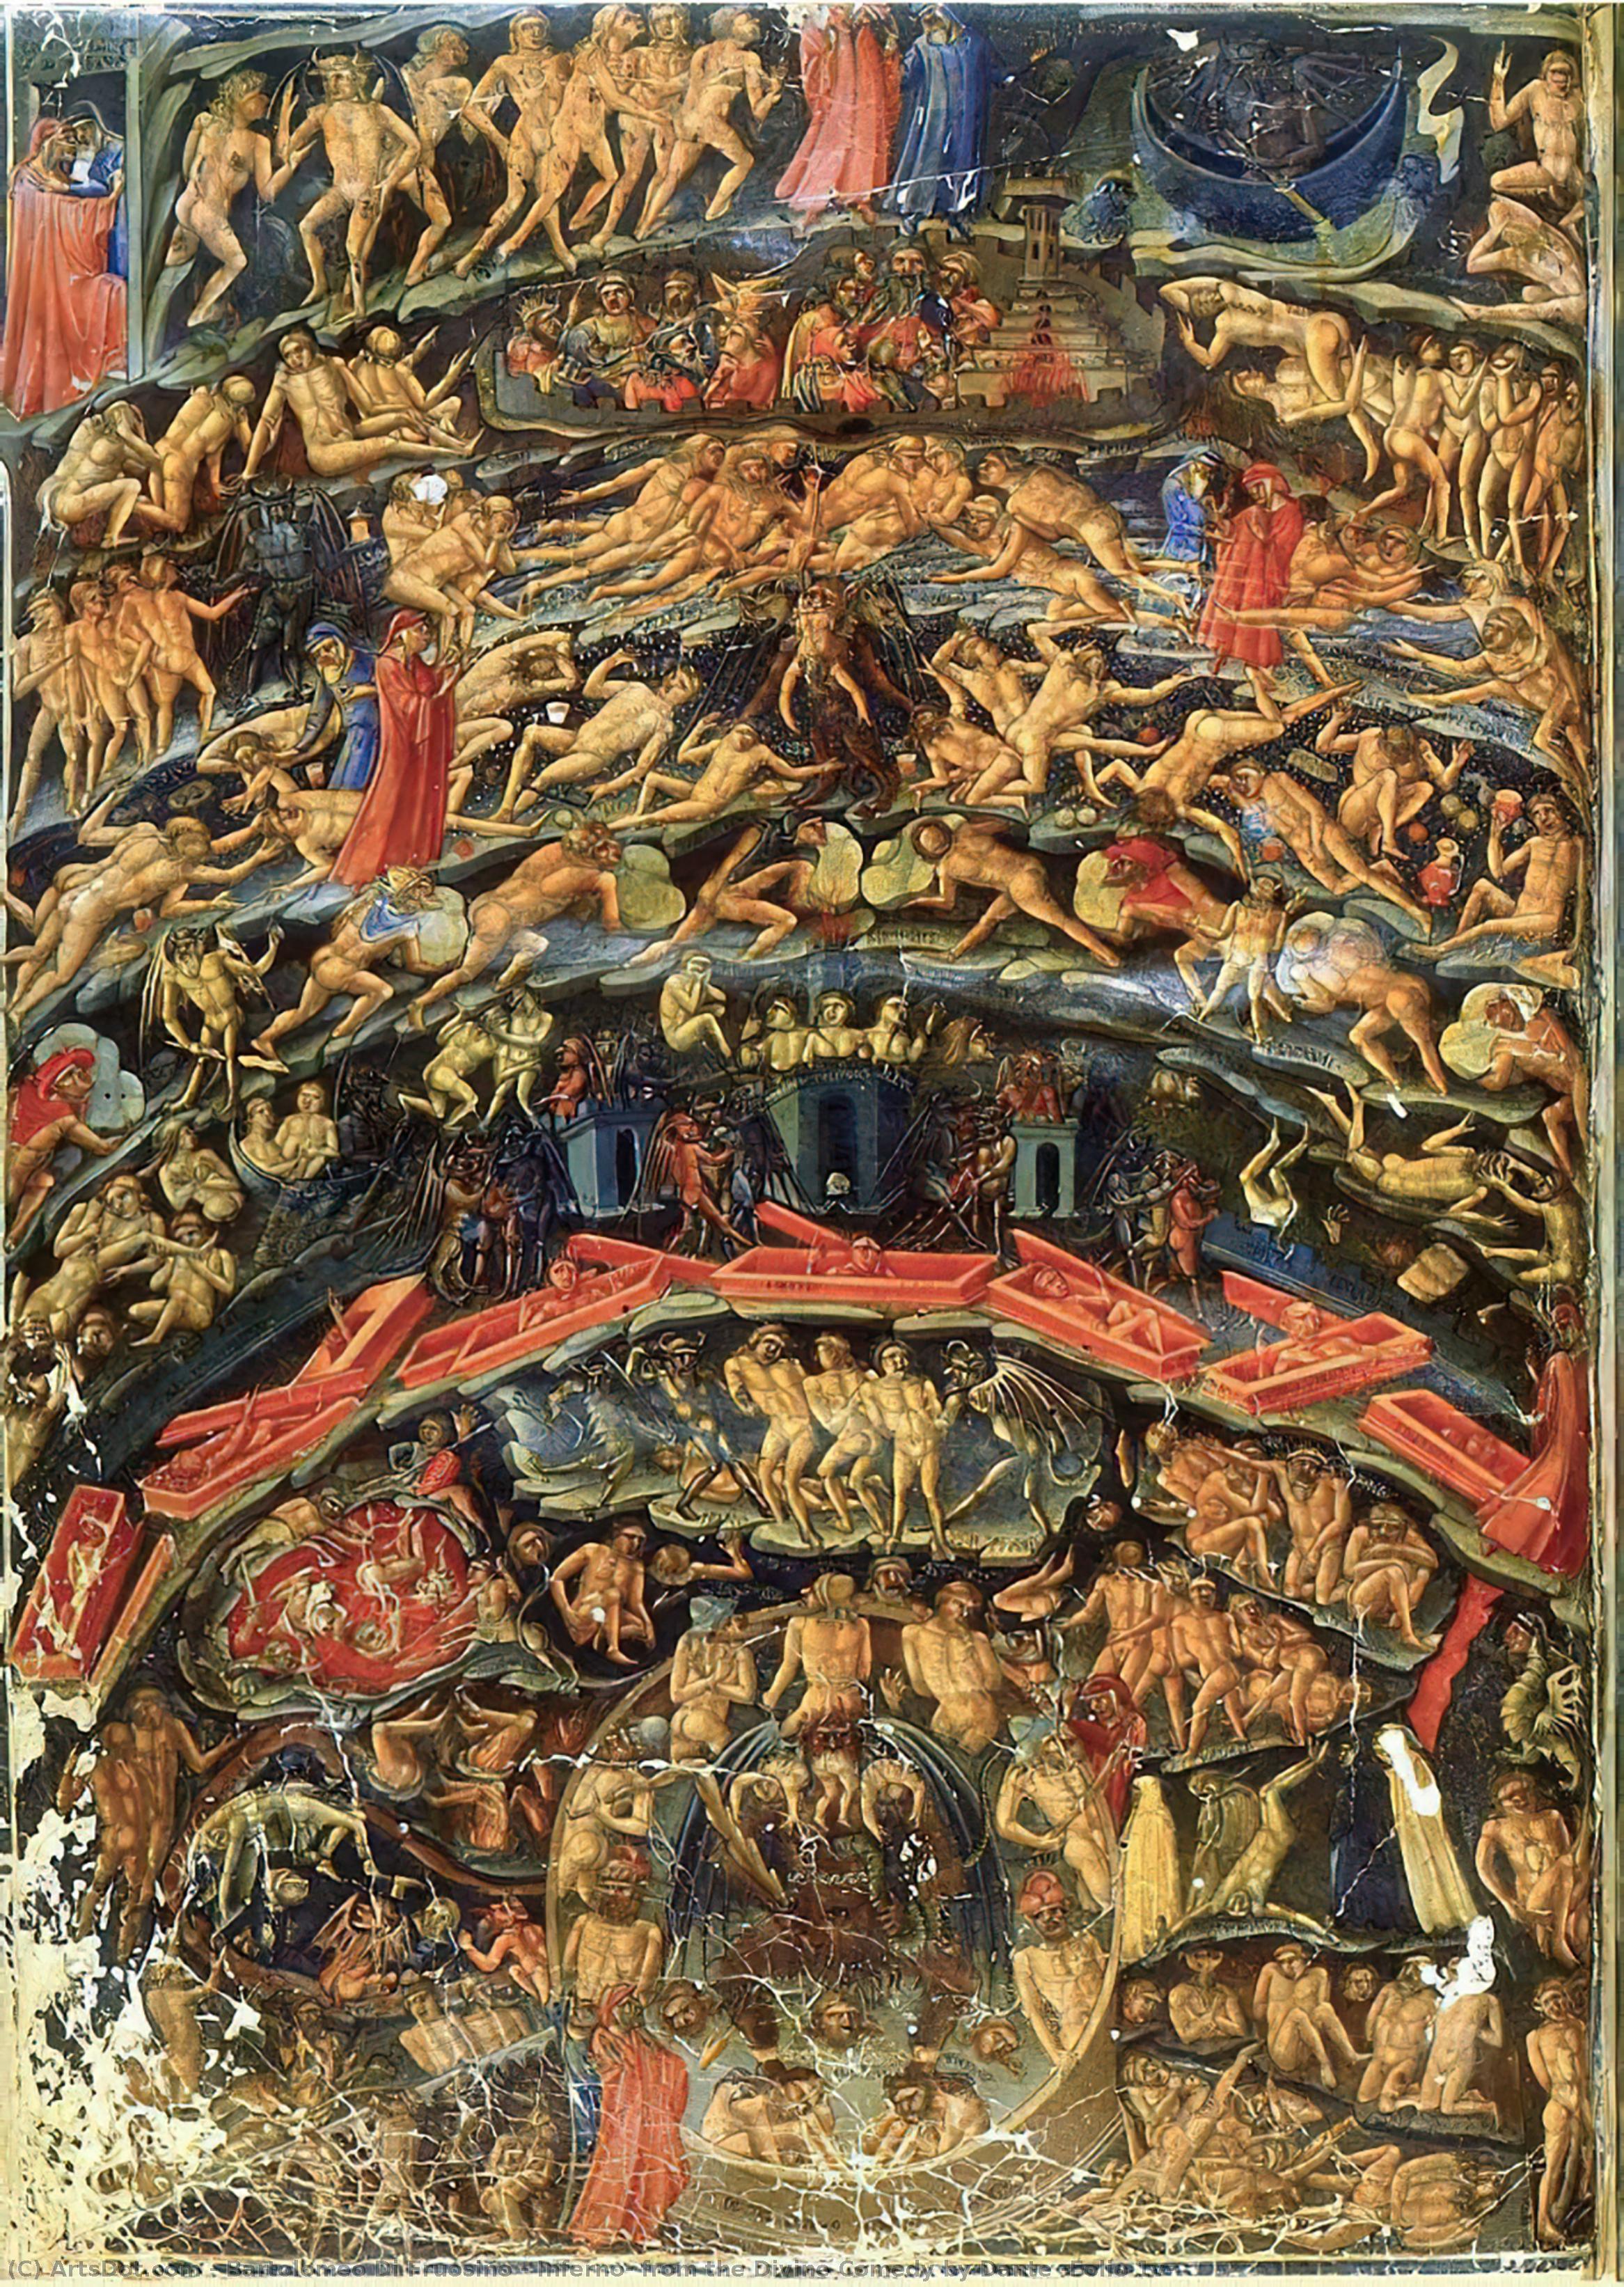 Comprar Reproducciones De Arte Del Museo Inferno, de la Divina Comedia de Dante (Folio 1v), 1430 de Bartolomeo Di Fruosino (1366-1441, Italy) | ArtsDot.com